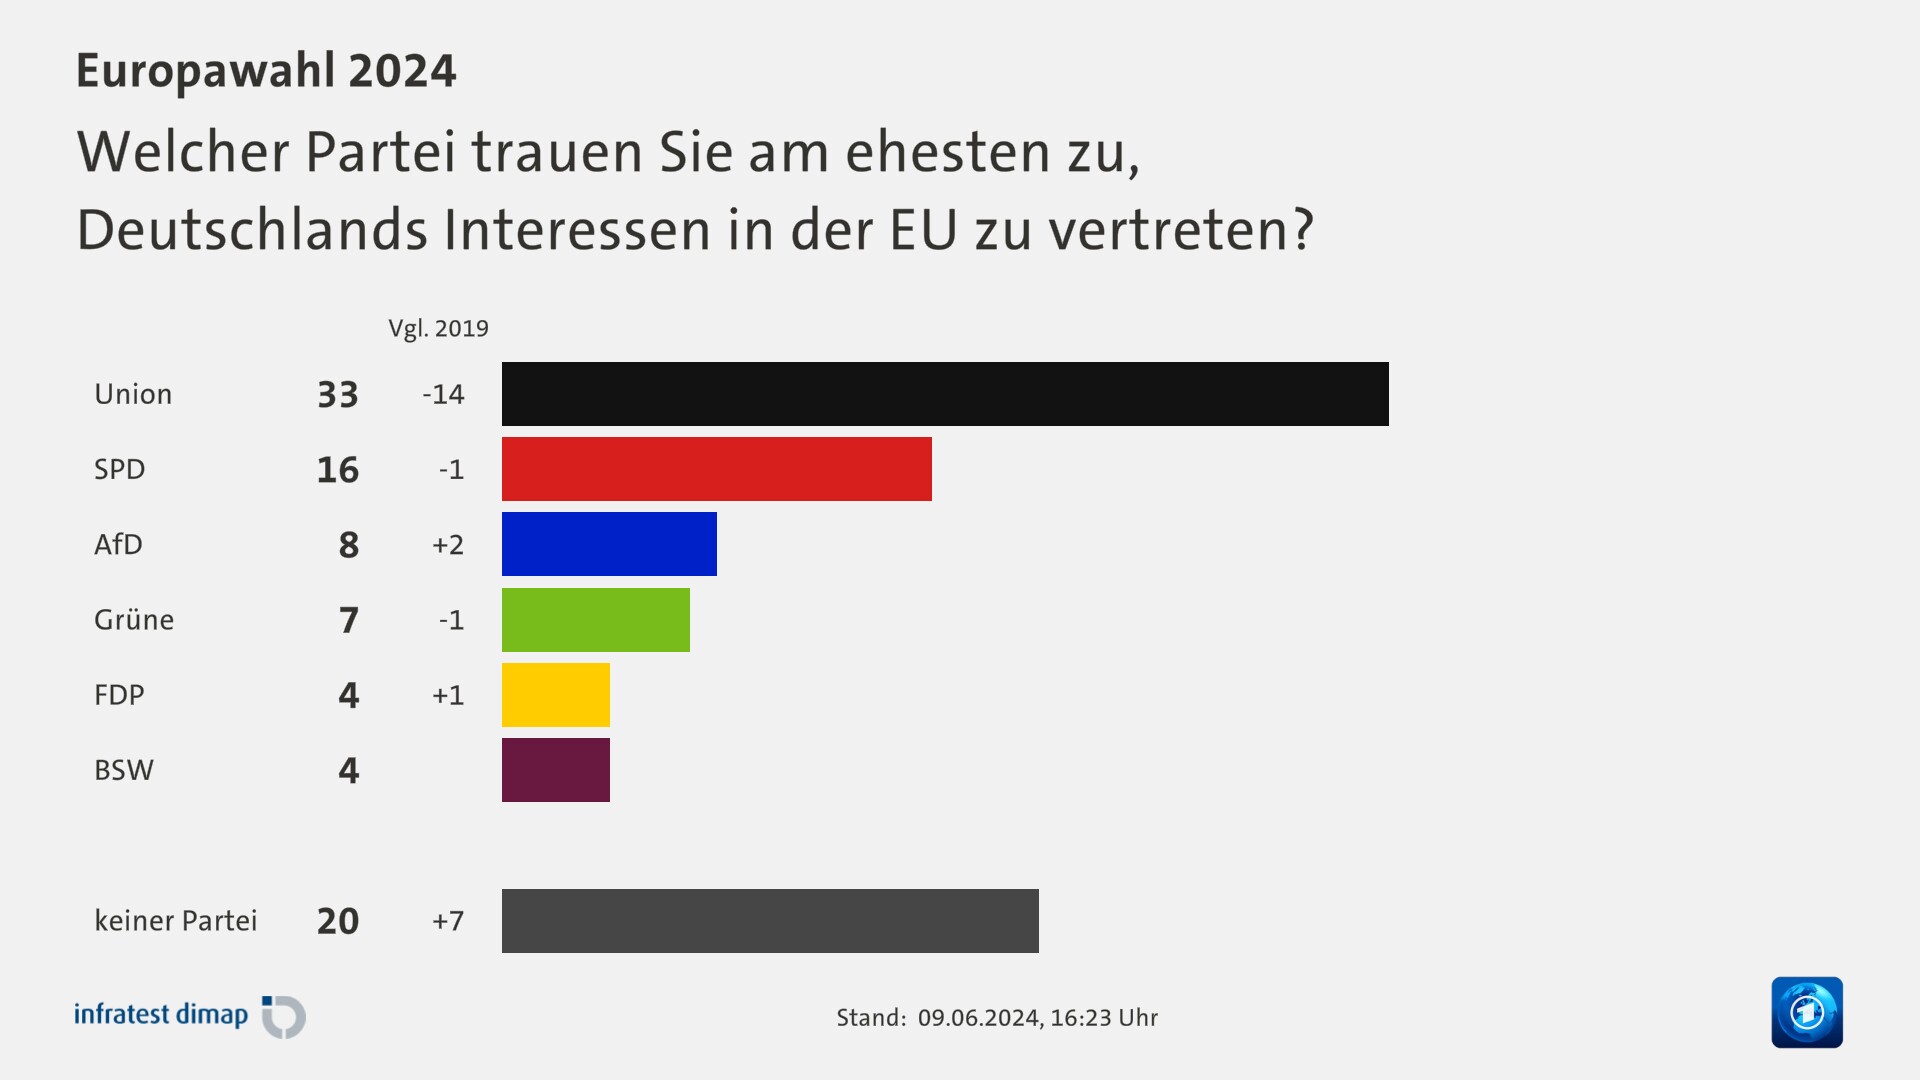 Welcher Partei trauen Sie am ehesten zu,|Deutschlands Interessen in der EU zu vertreten?